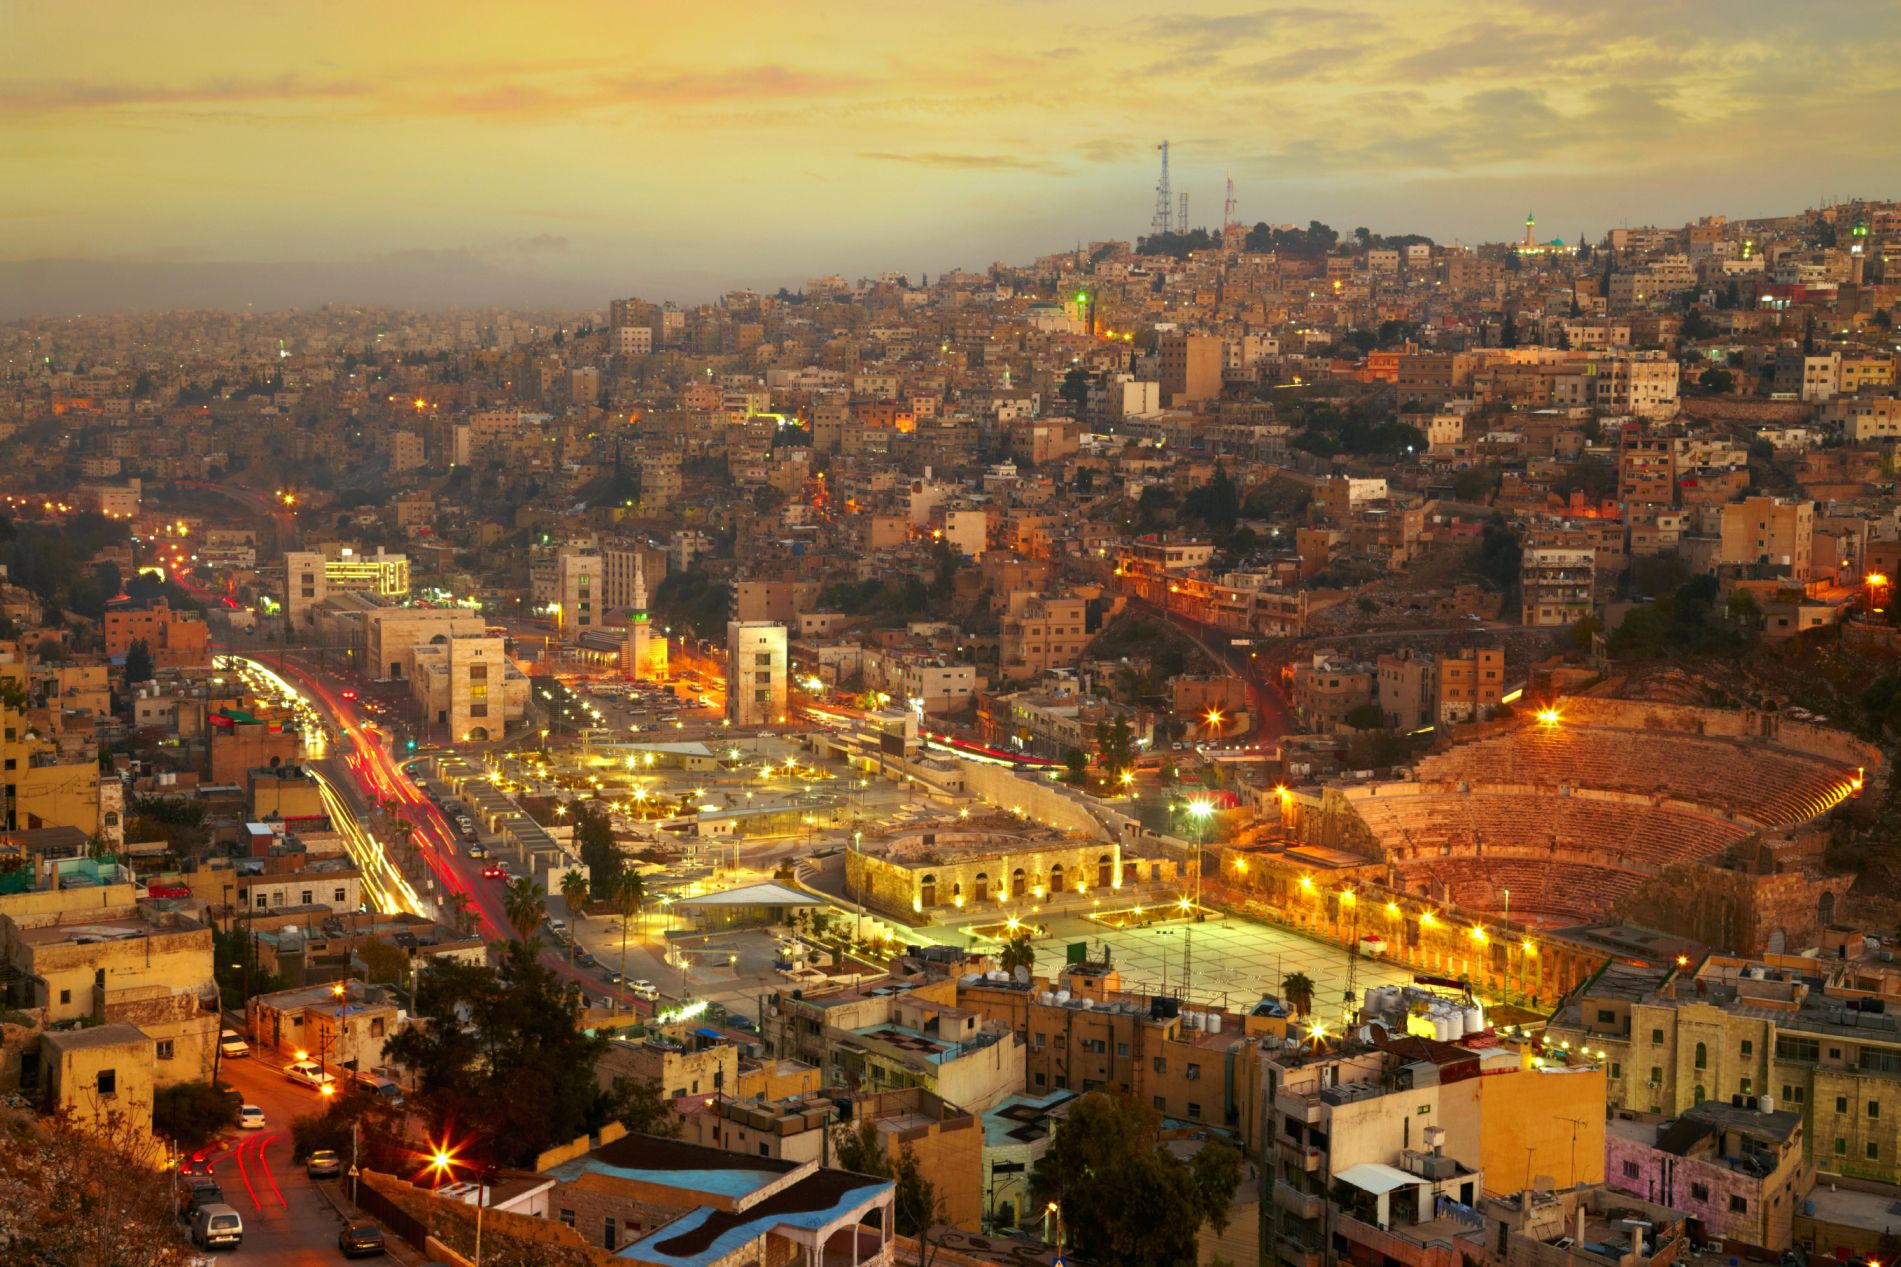 Les lumières de la ville d'Amman.